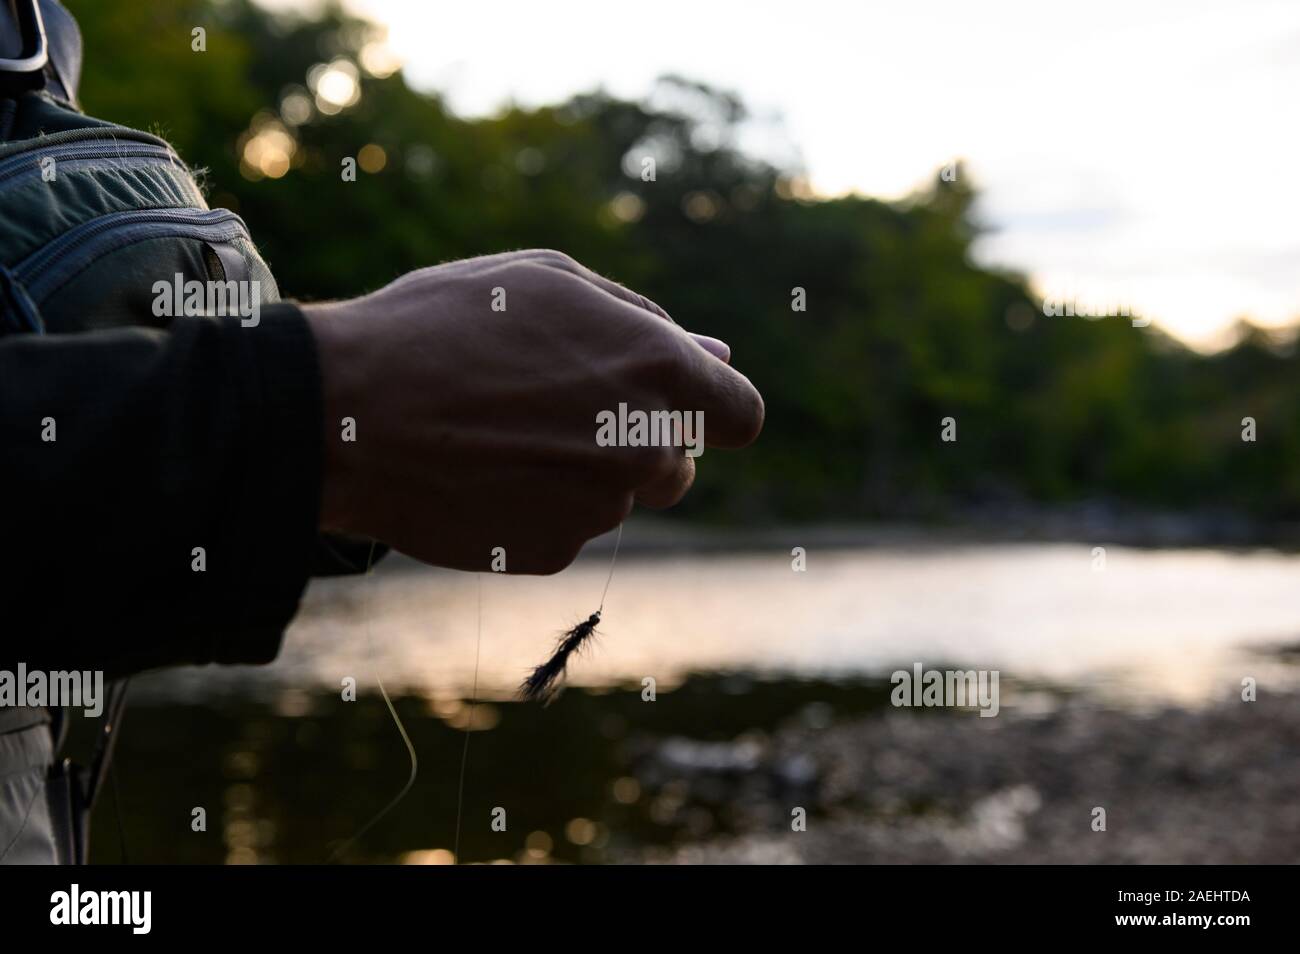 Una mano sujetando una mosca en un río al atardecer Foto de stock